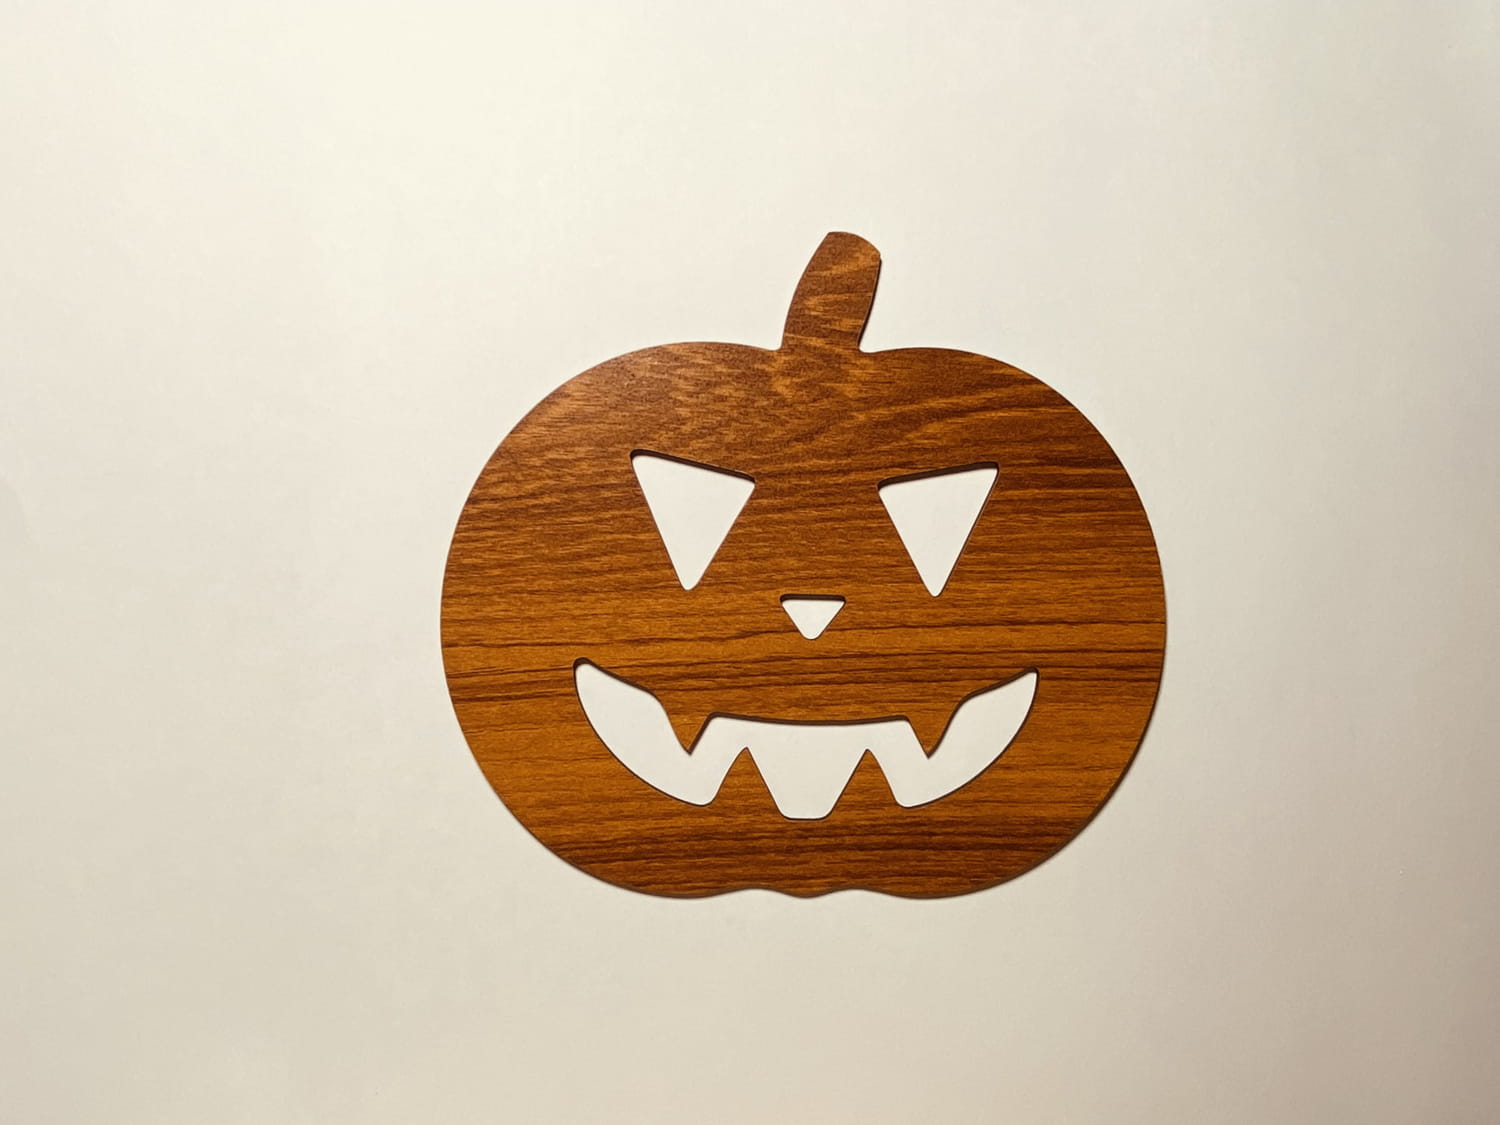 Laser Cut Halloween Unfinished Wooden Pumpkin Craft Cutout Free Vector